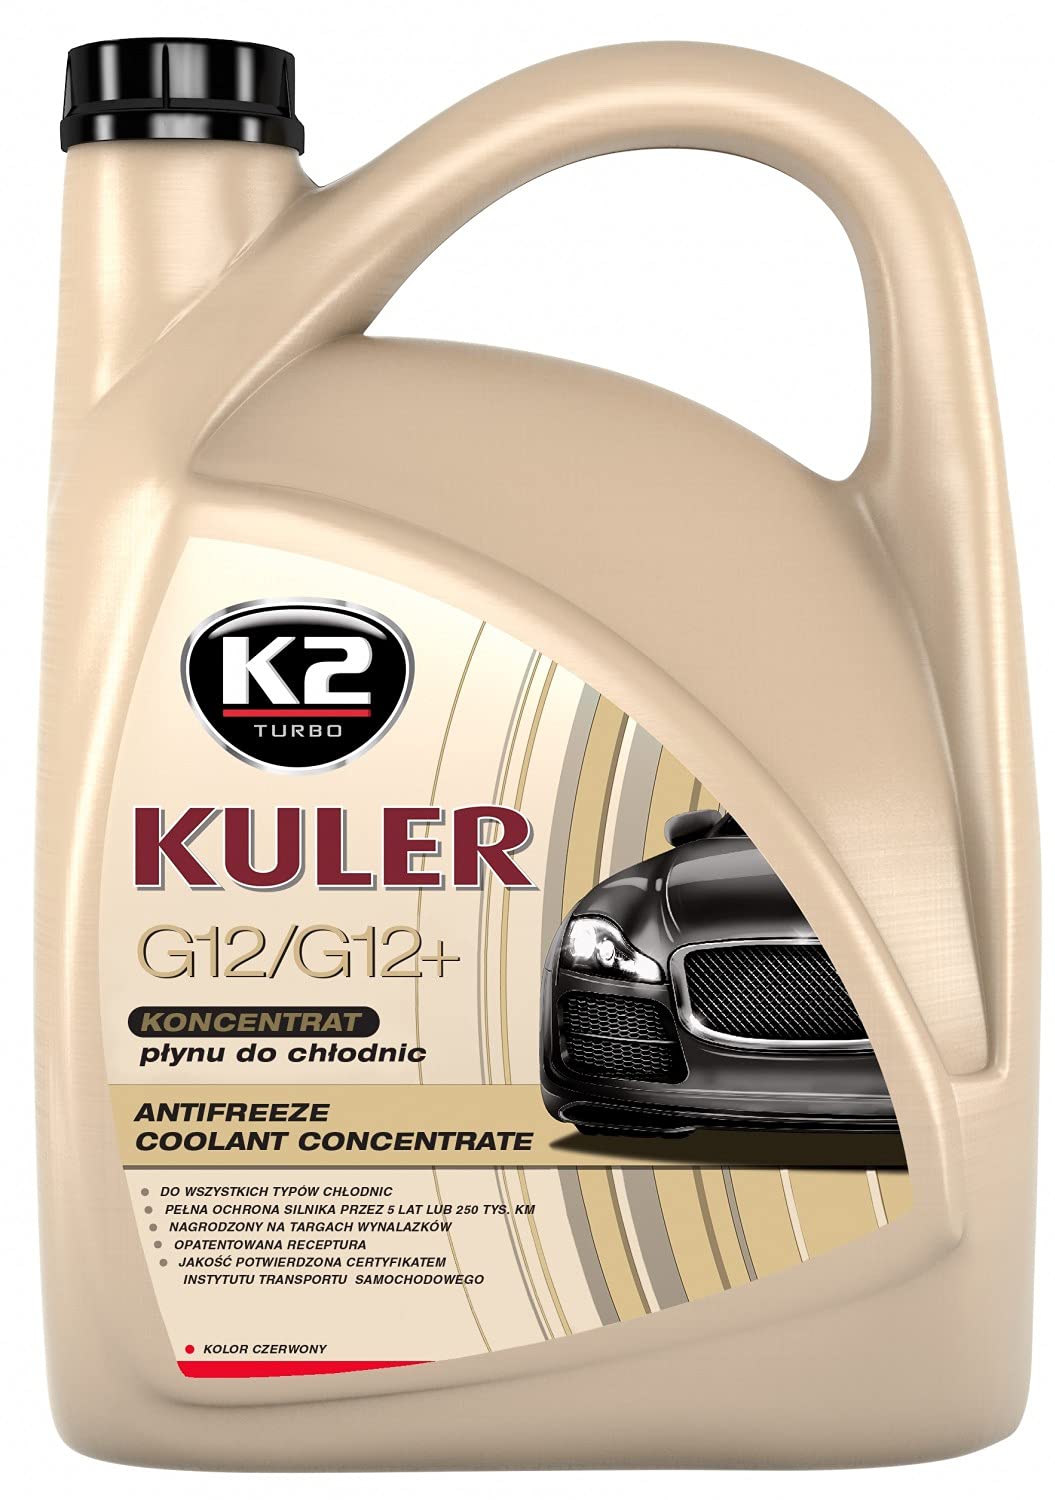 K2 Kühlerfrostschutz Konzentrat, long life, Farbe rot, bis -35°C, Kühlmittel, Kühlflüssigkeit, Frostschutzmittel, für alle Automarken geeignet, 5L Konzentrat ergeben 10L Fertiggemisch von K2